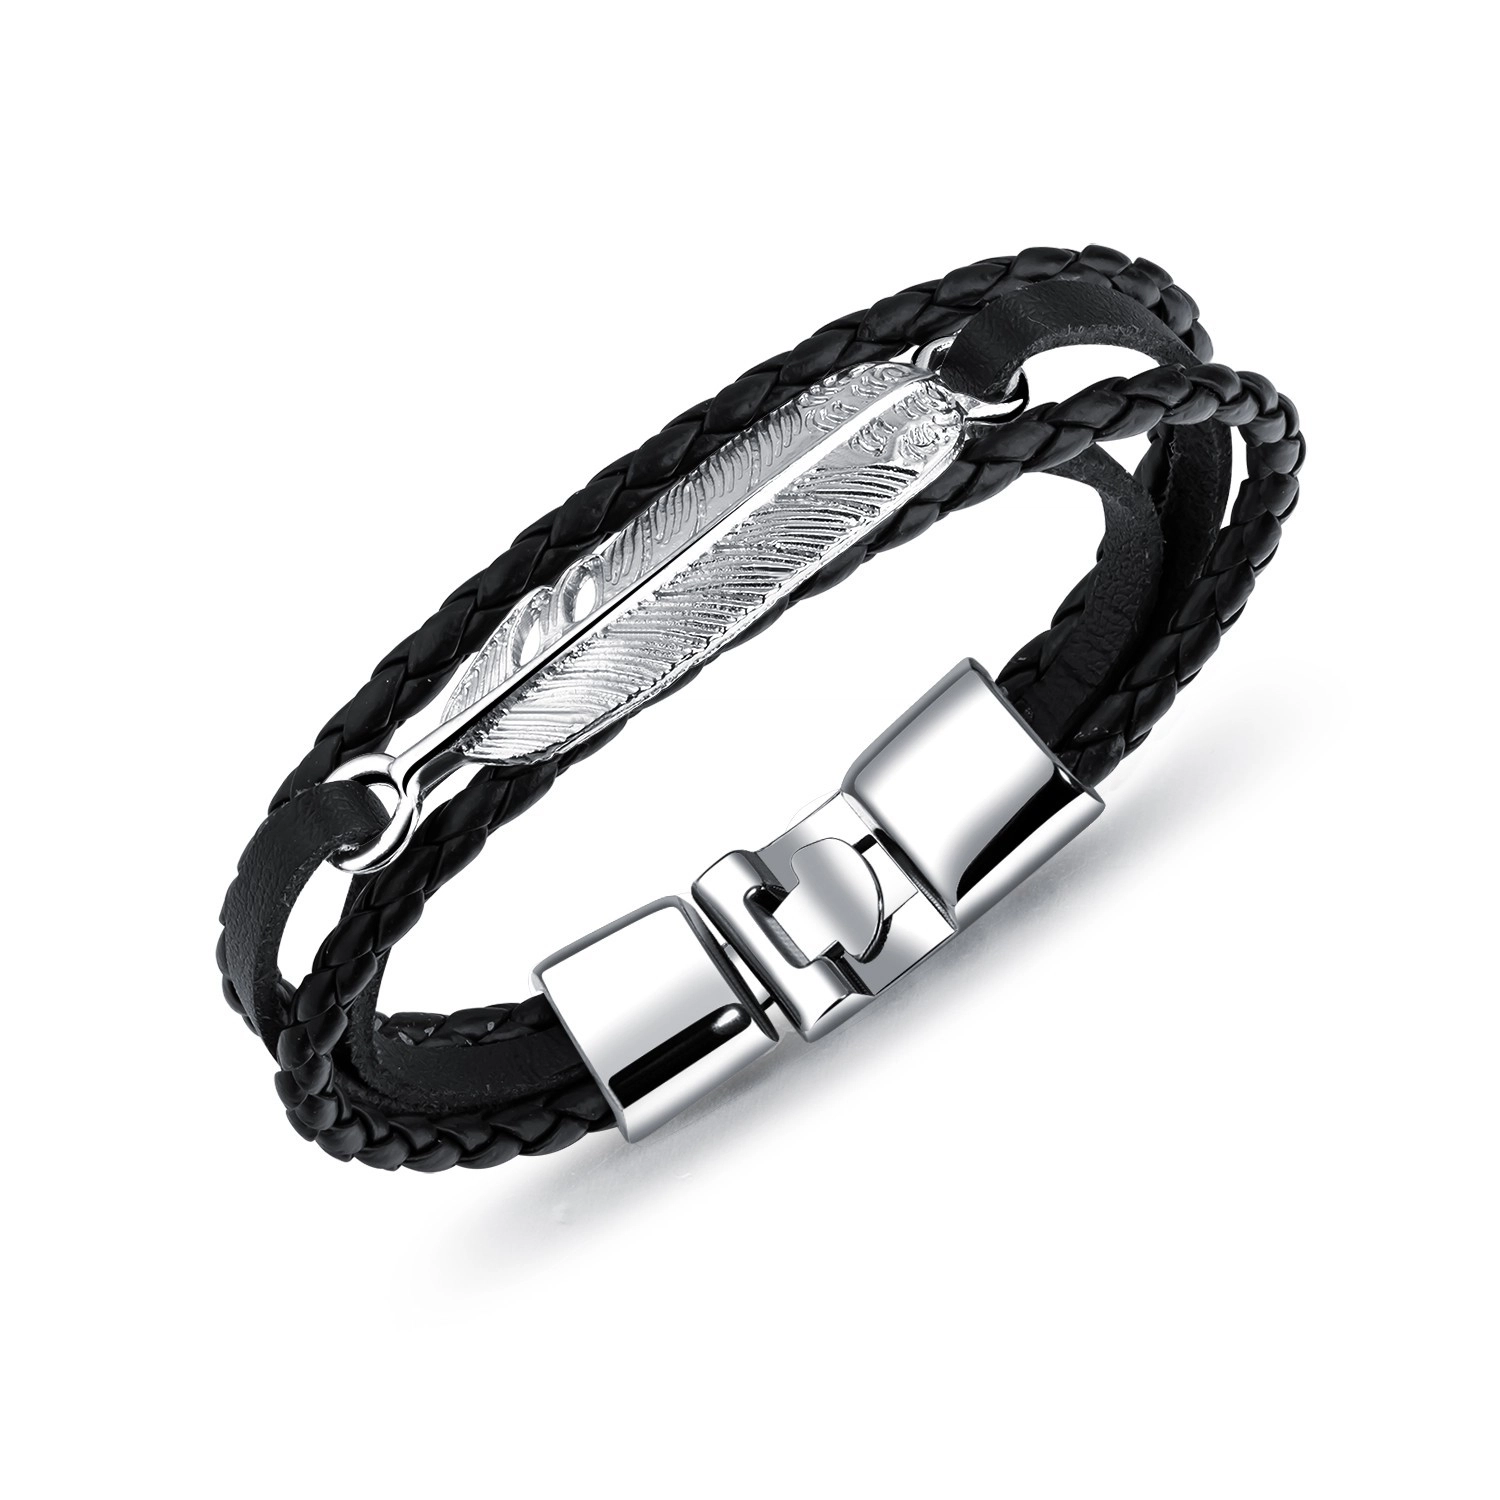 E-shop Šperky Eshop - Čierny koženkový náramok s pierkom striebornej farby, pletené pásy SP74.02